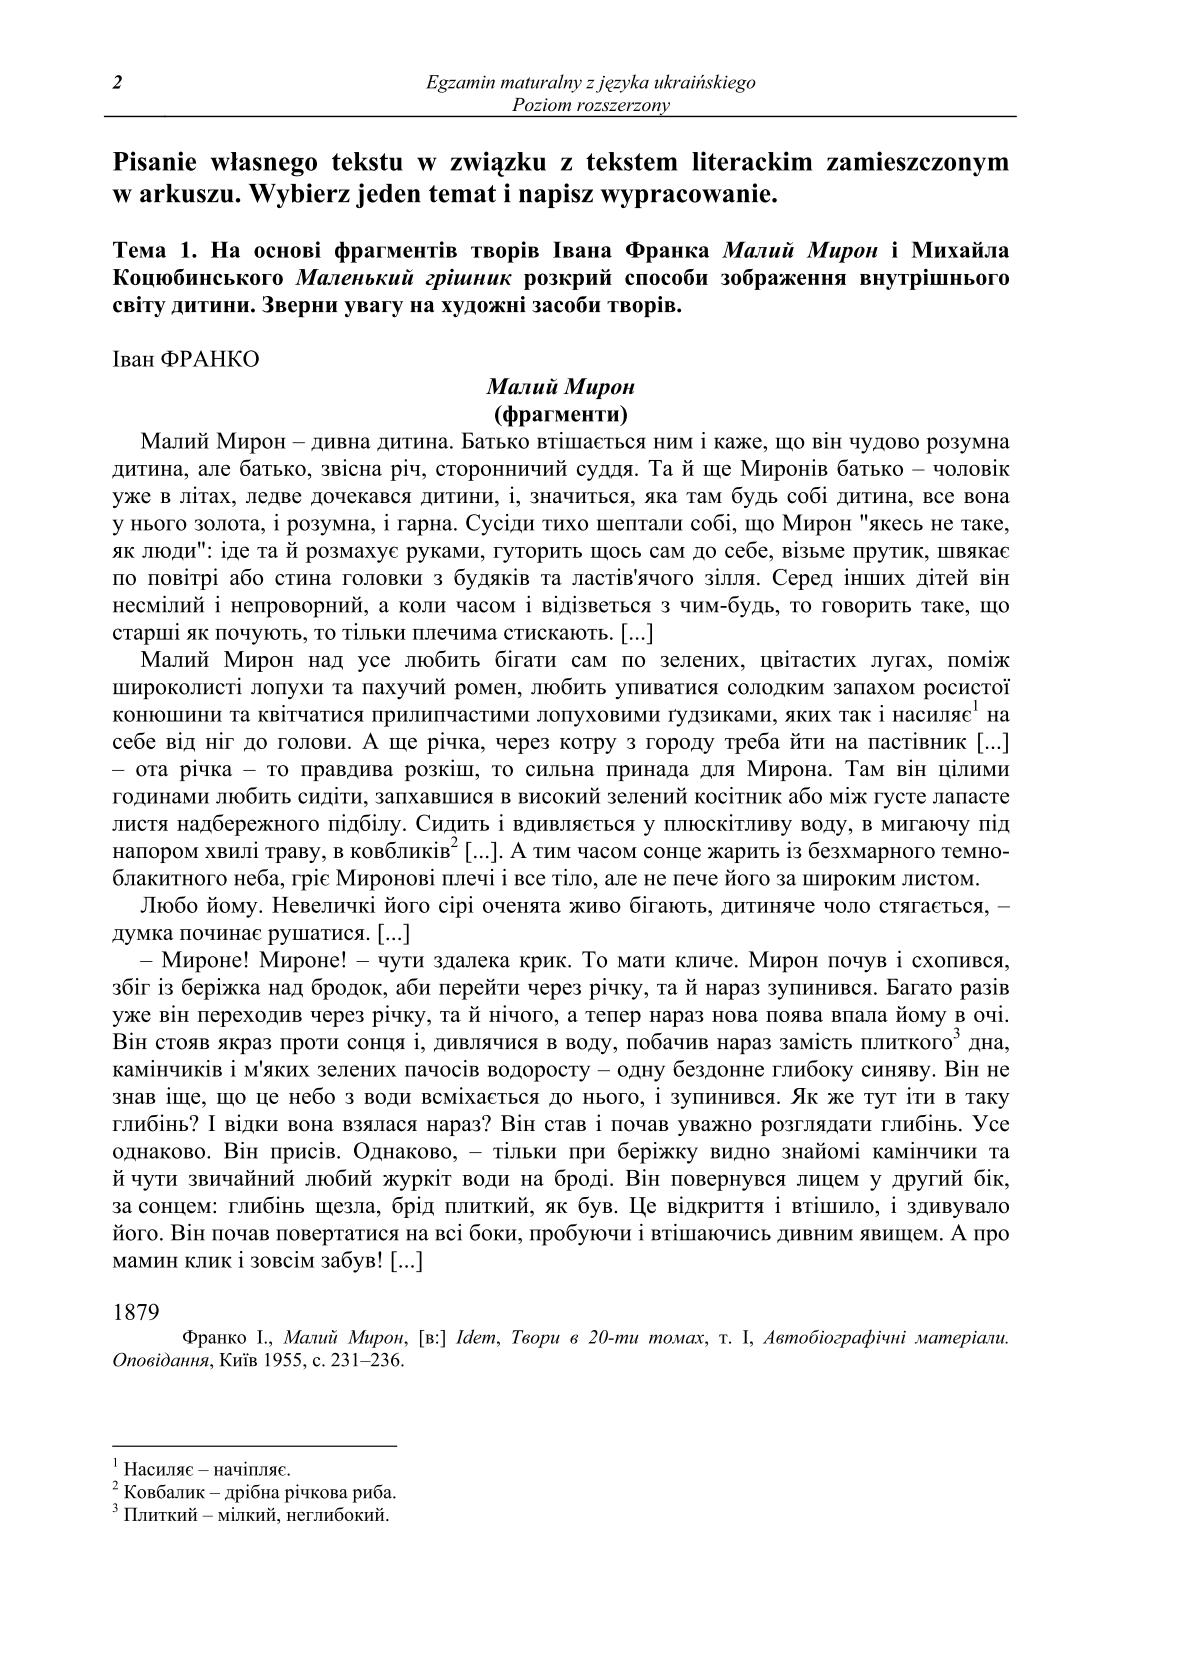 pytania-jezyk-ukrainski-poziom-rozszerzony-matura-2014-str.2